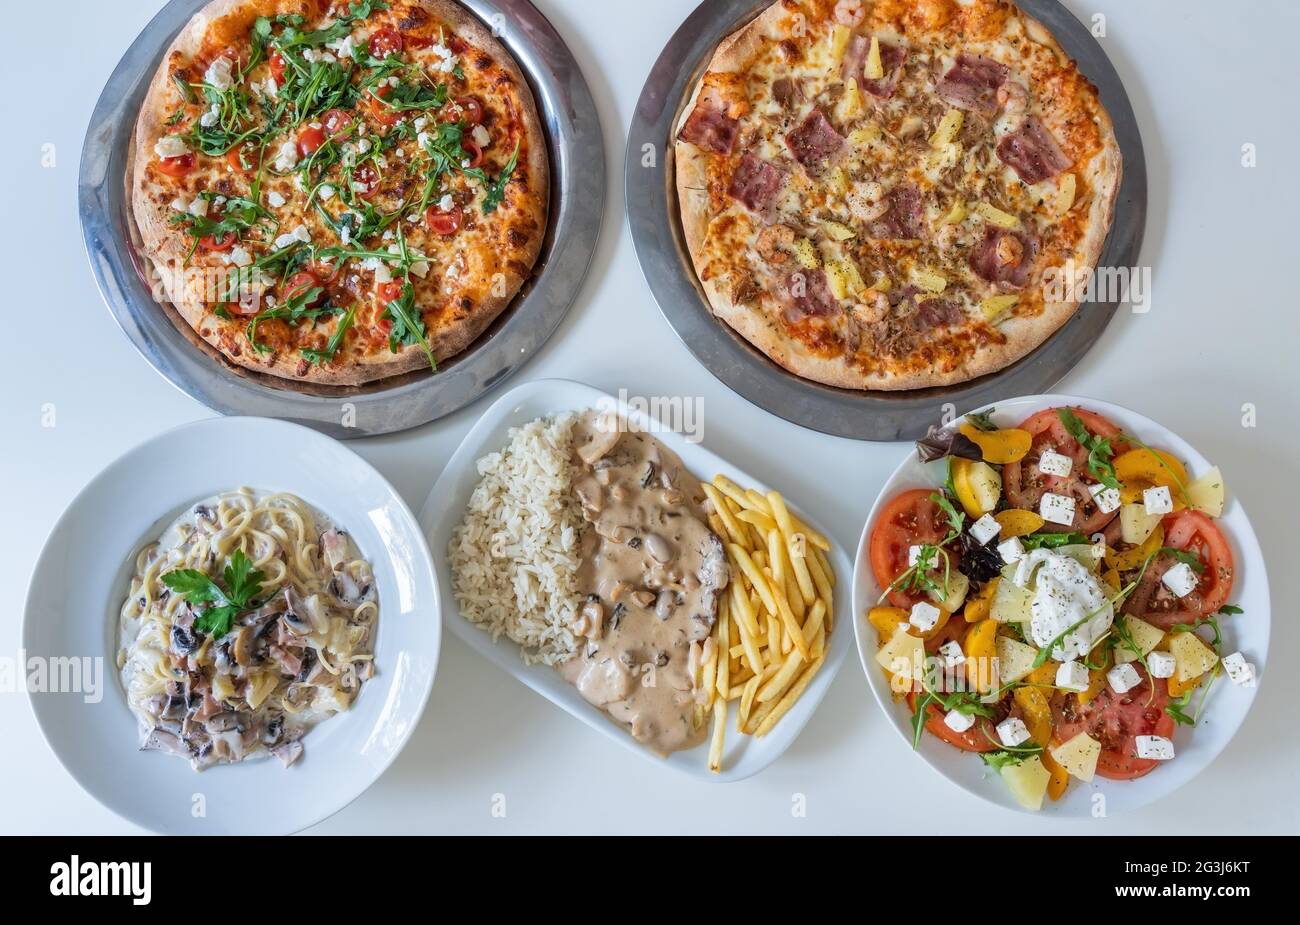 Varietà di diversi piatti culturali in tavola di piatti indiani Pizza, insalata, riso, carne, verdure. Panorama gastronomico. Vista dall'alto Foto Stock